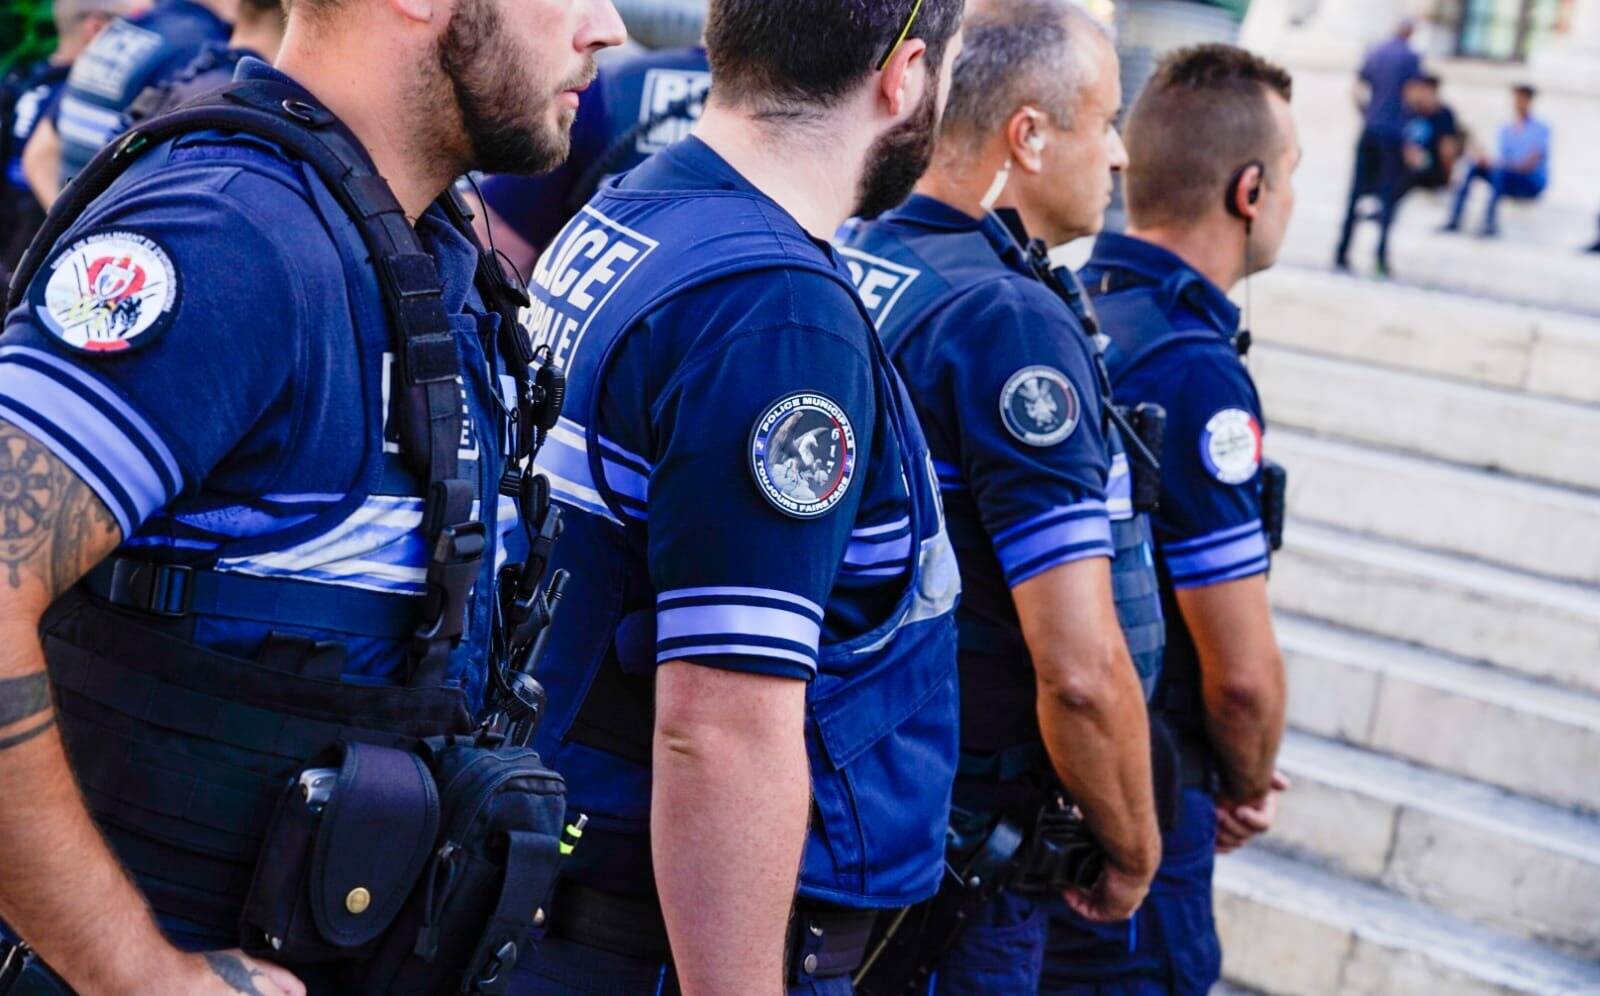 Brassard Police Municipale bleu texte et bandes rétroréfléchissants